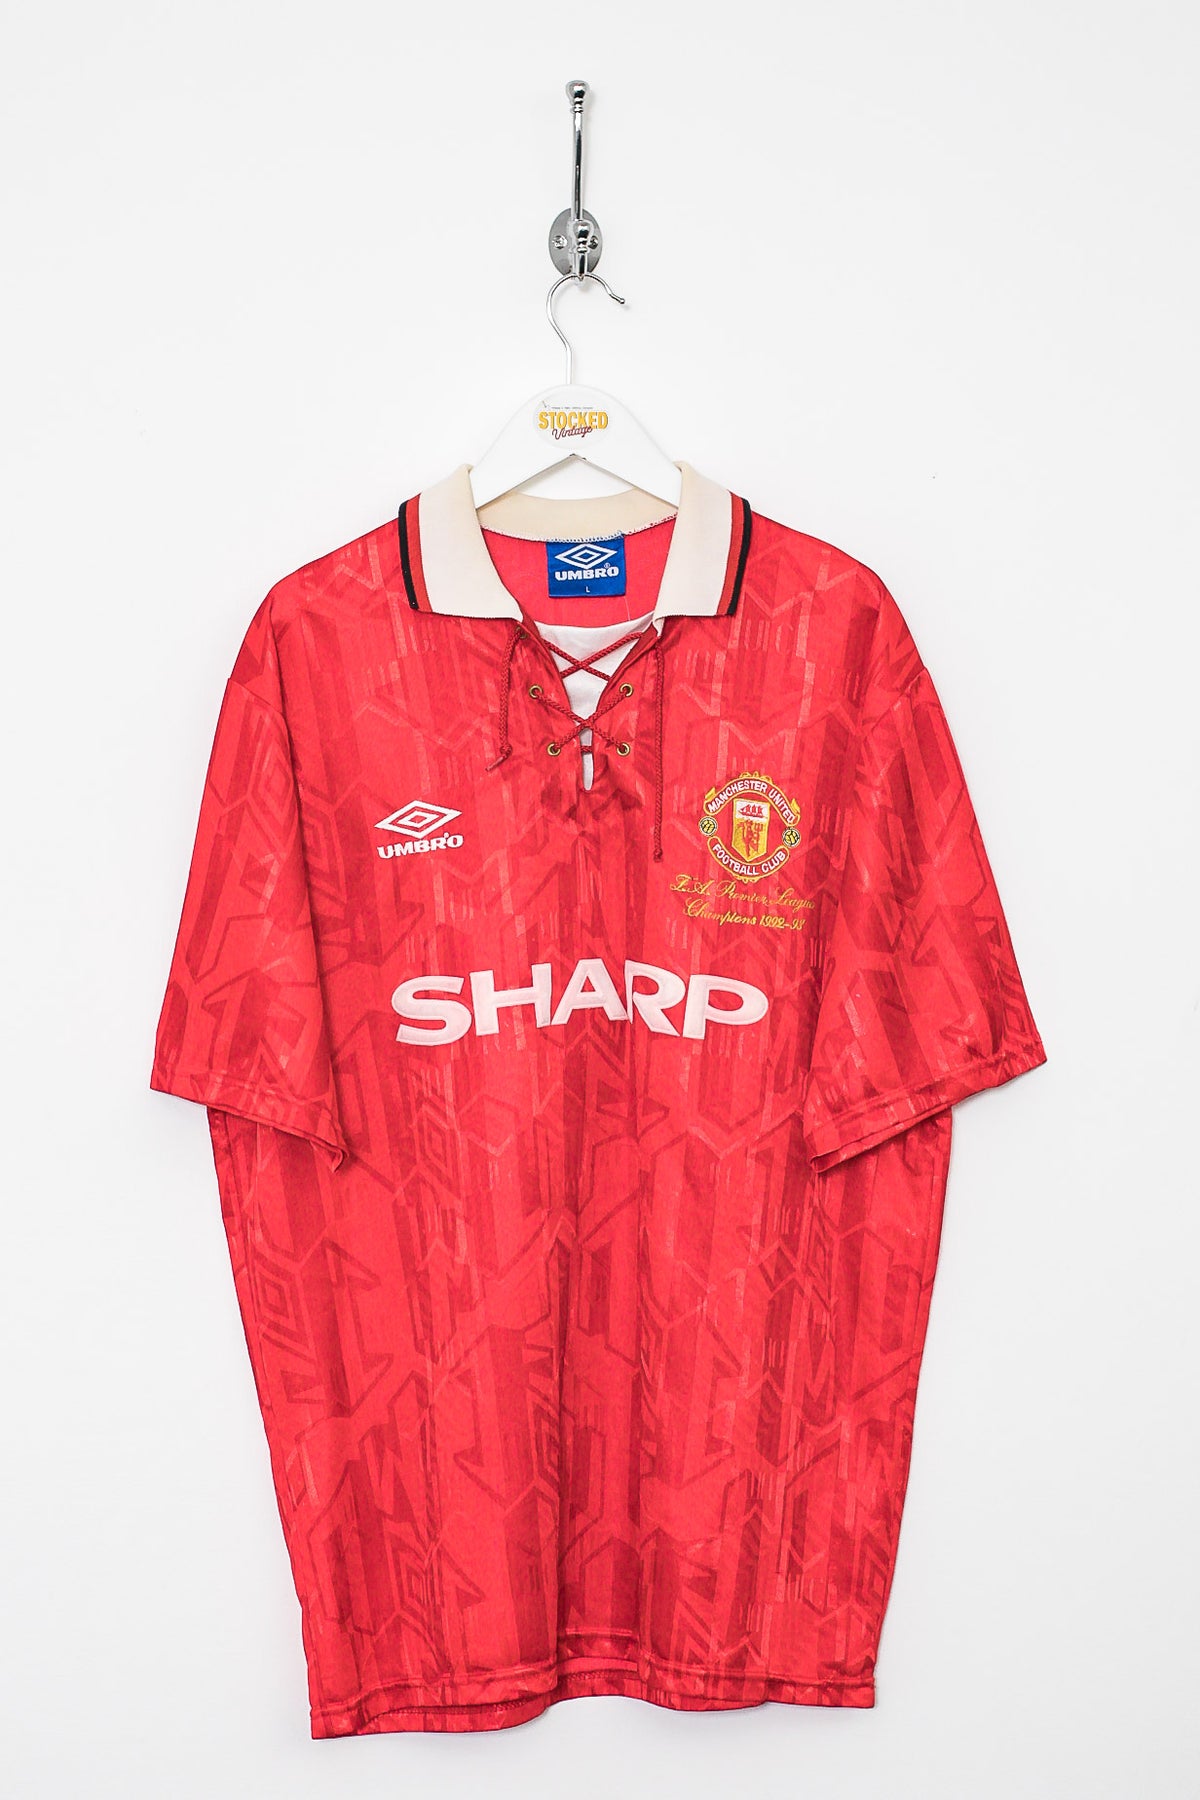 Umbro Man U 1992/94 Home Shirt (L)